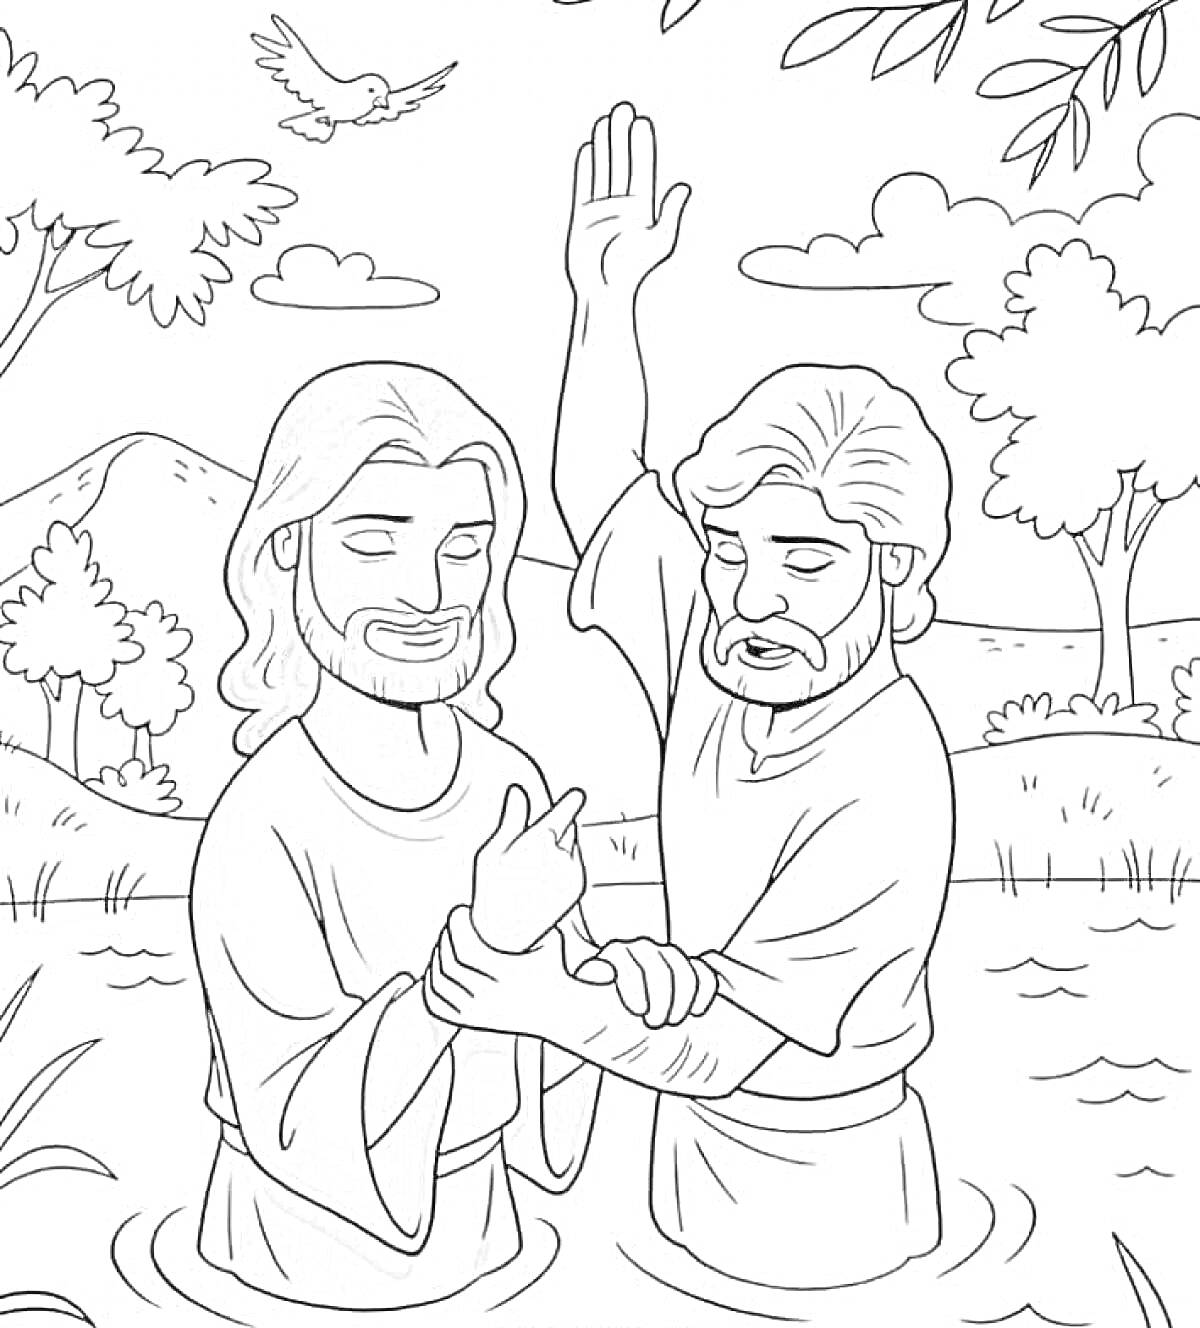 Раскраска Крещение Иисуса в реке, два человека в воде, один крестит другого, голубь летит над ними, деревья и кусты на заднем плане